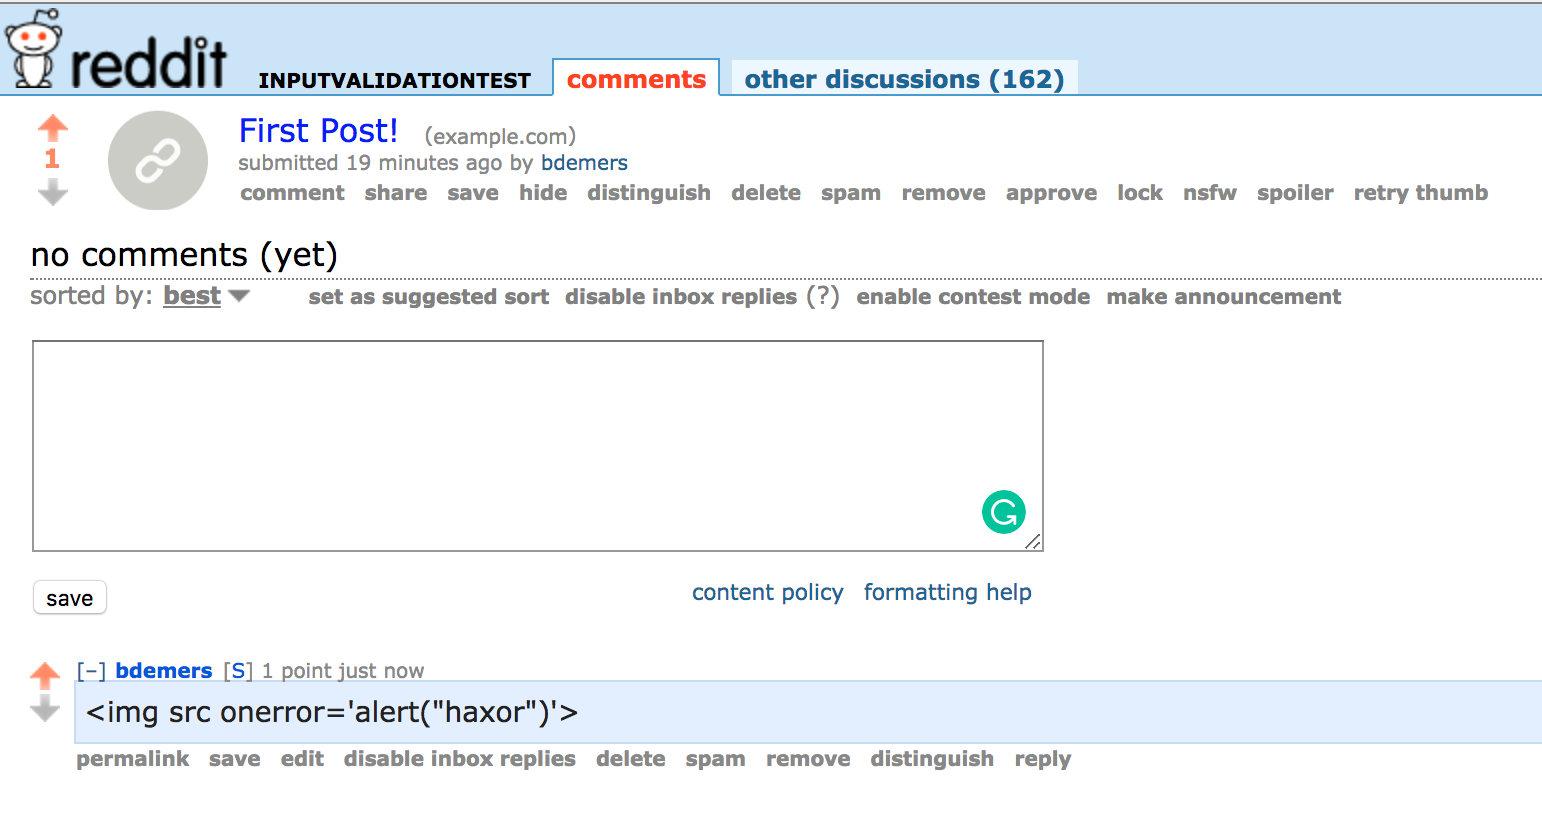 Reddit properly escapes user input